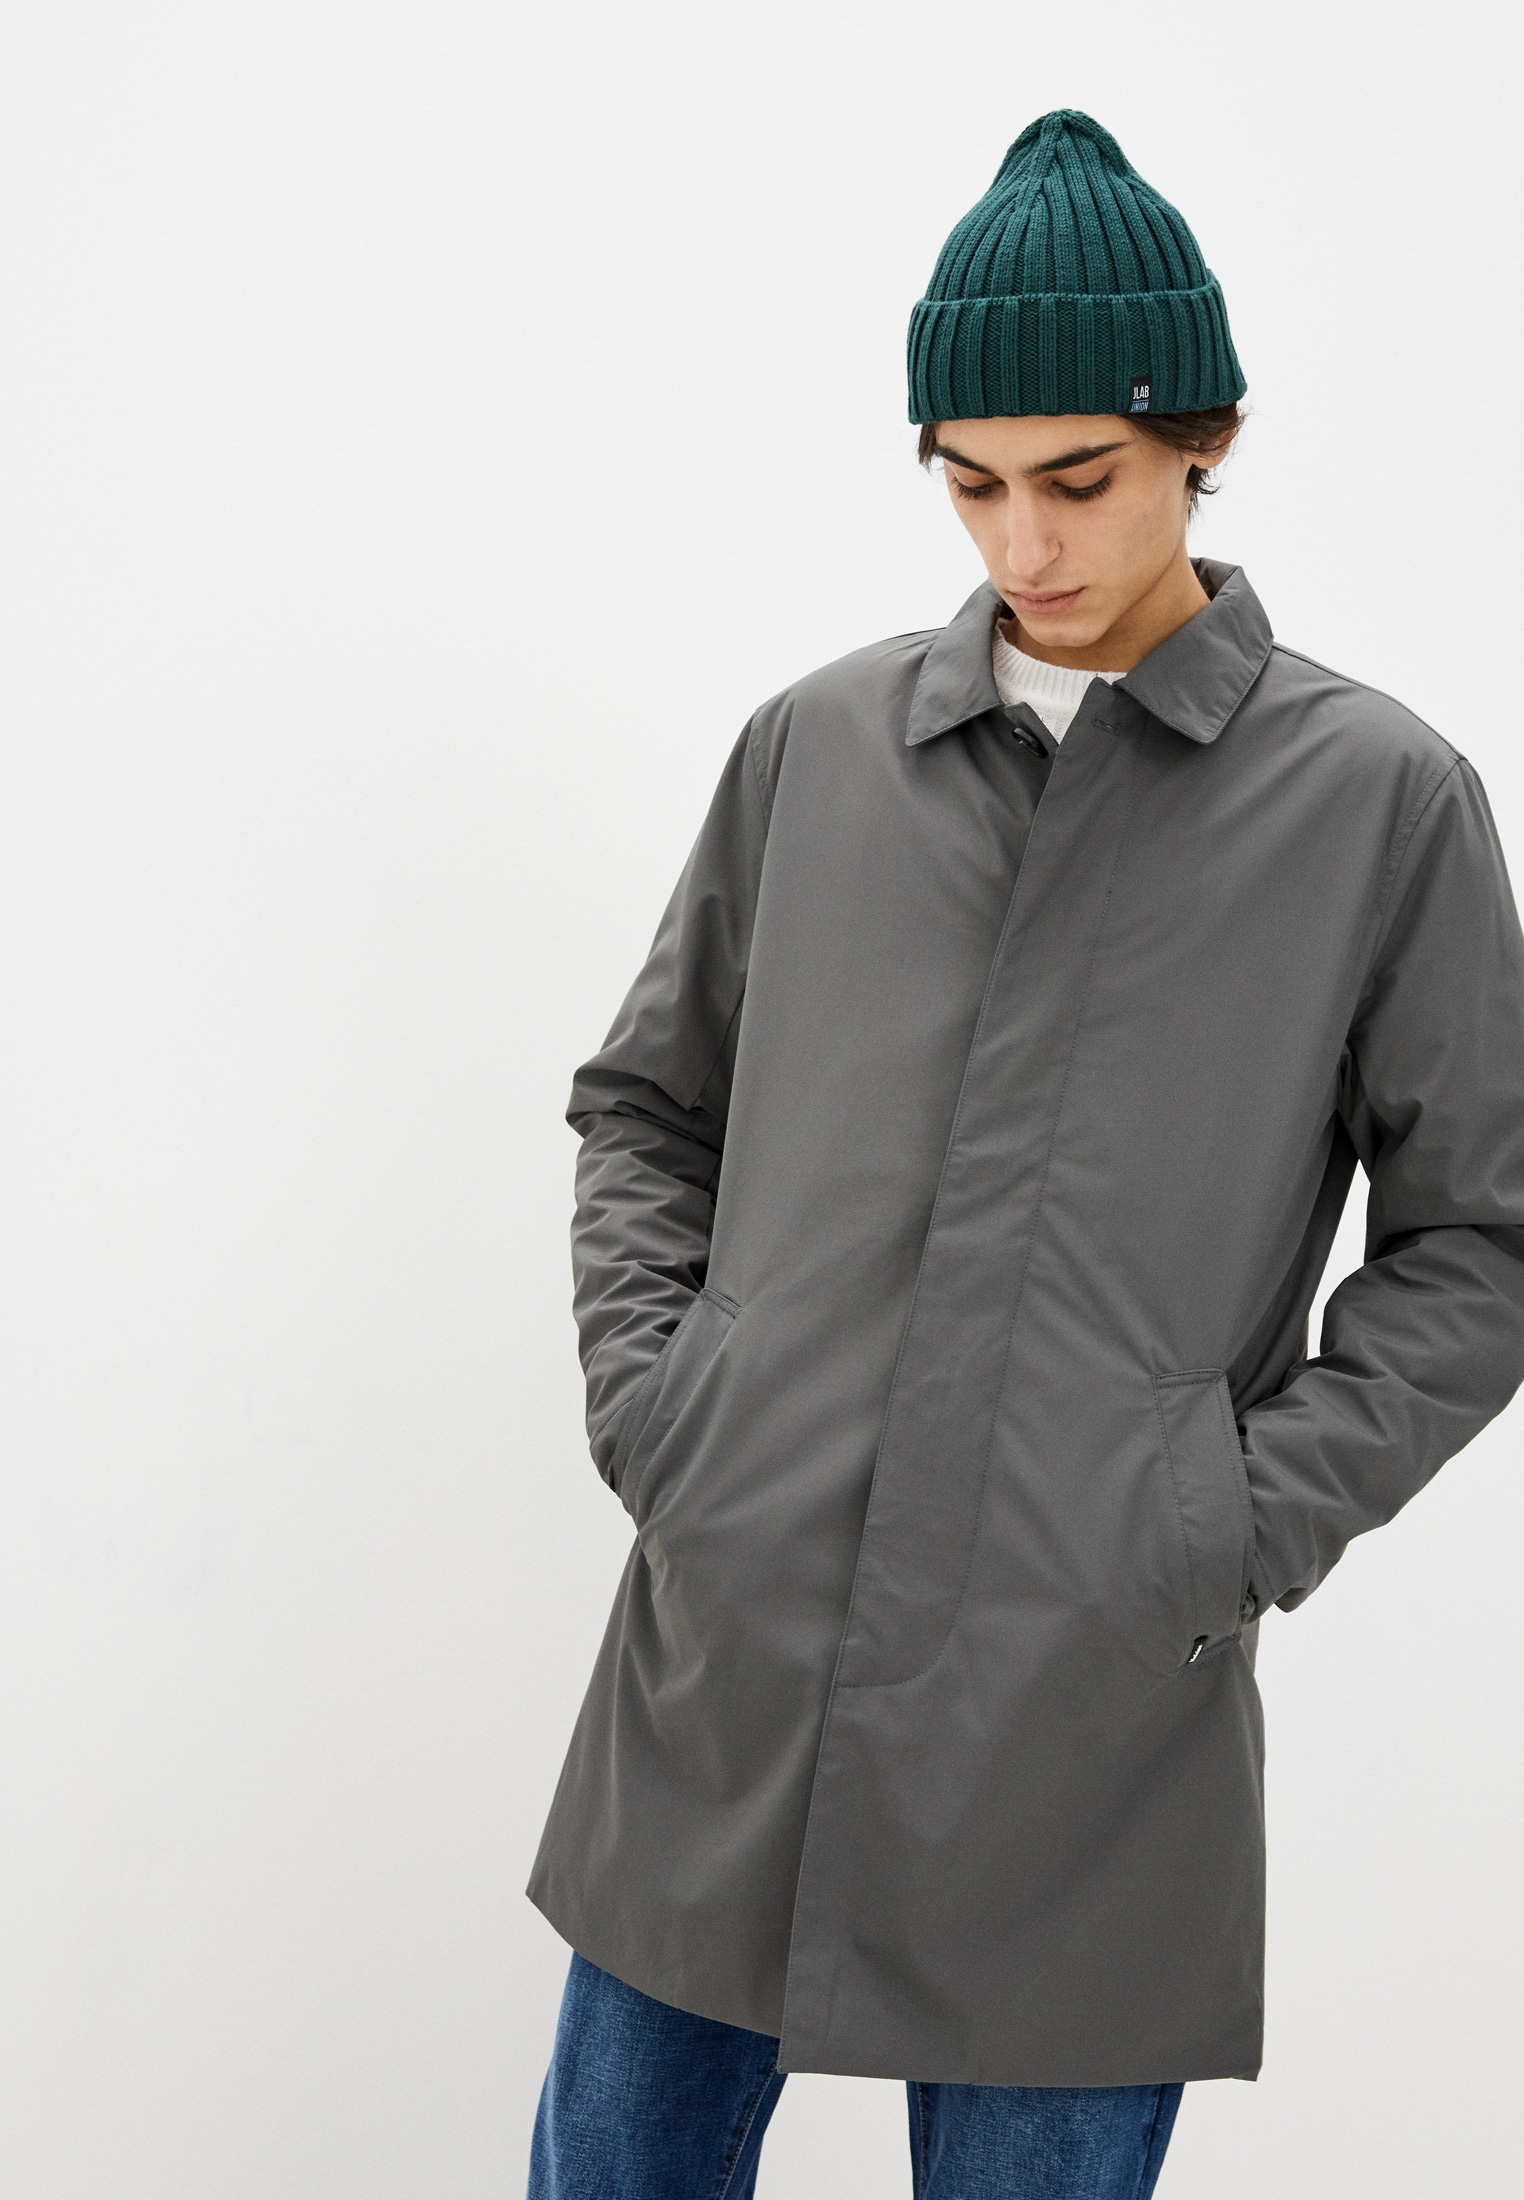 Куртка утепленная Matinique, цвет: серый, MP002XM09KKB — купить в интернет-магазине Lamoda